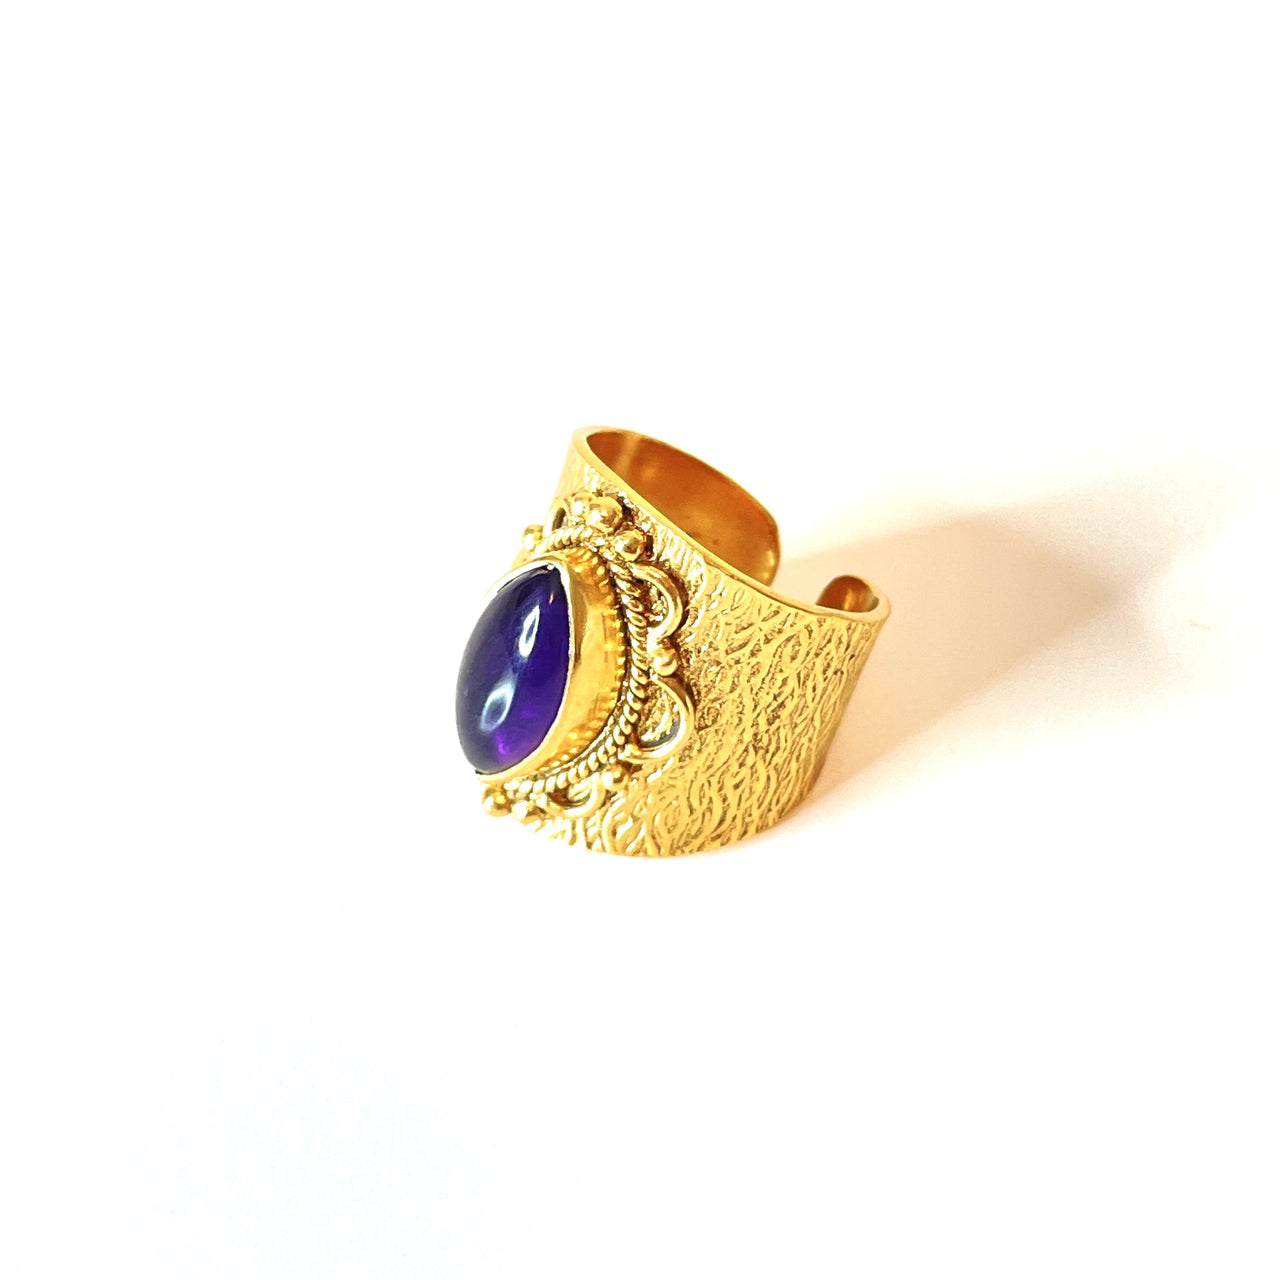 Espectacular anillo de bronce con baño de oro. El detalle central es de Amatista. Este anillo es ajustable lo que lo hace perfecto. Además es super combinable con tu look favorito. Lateral